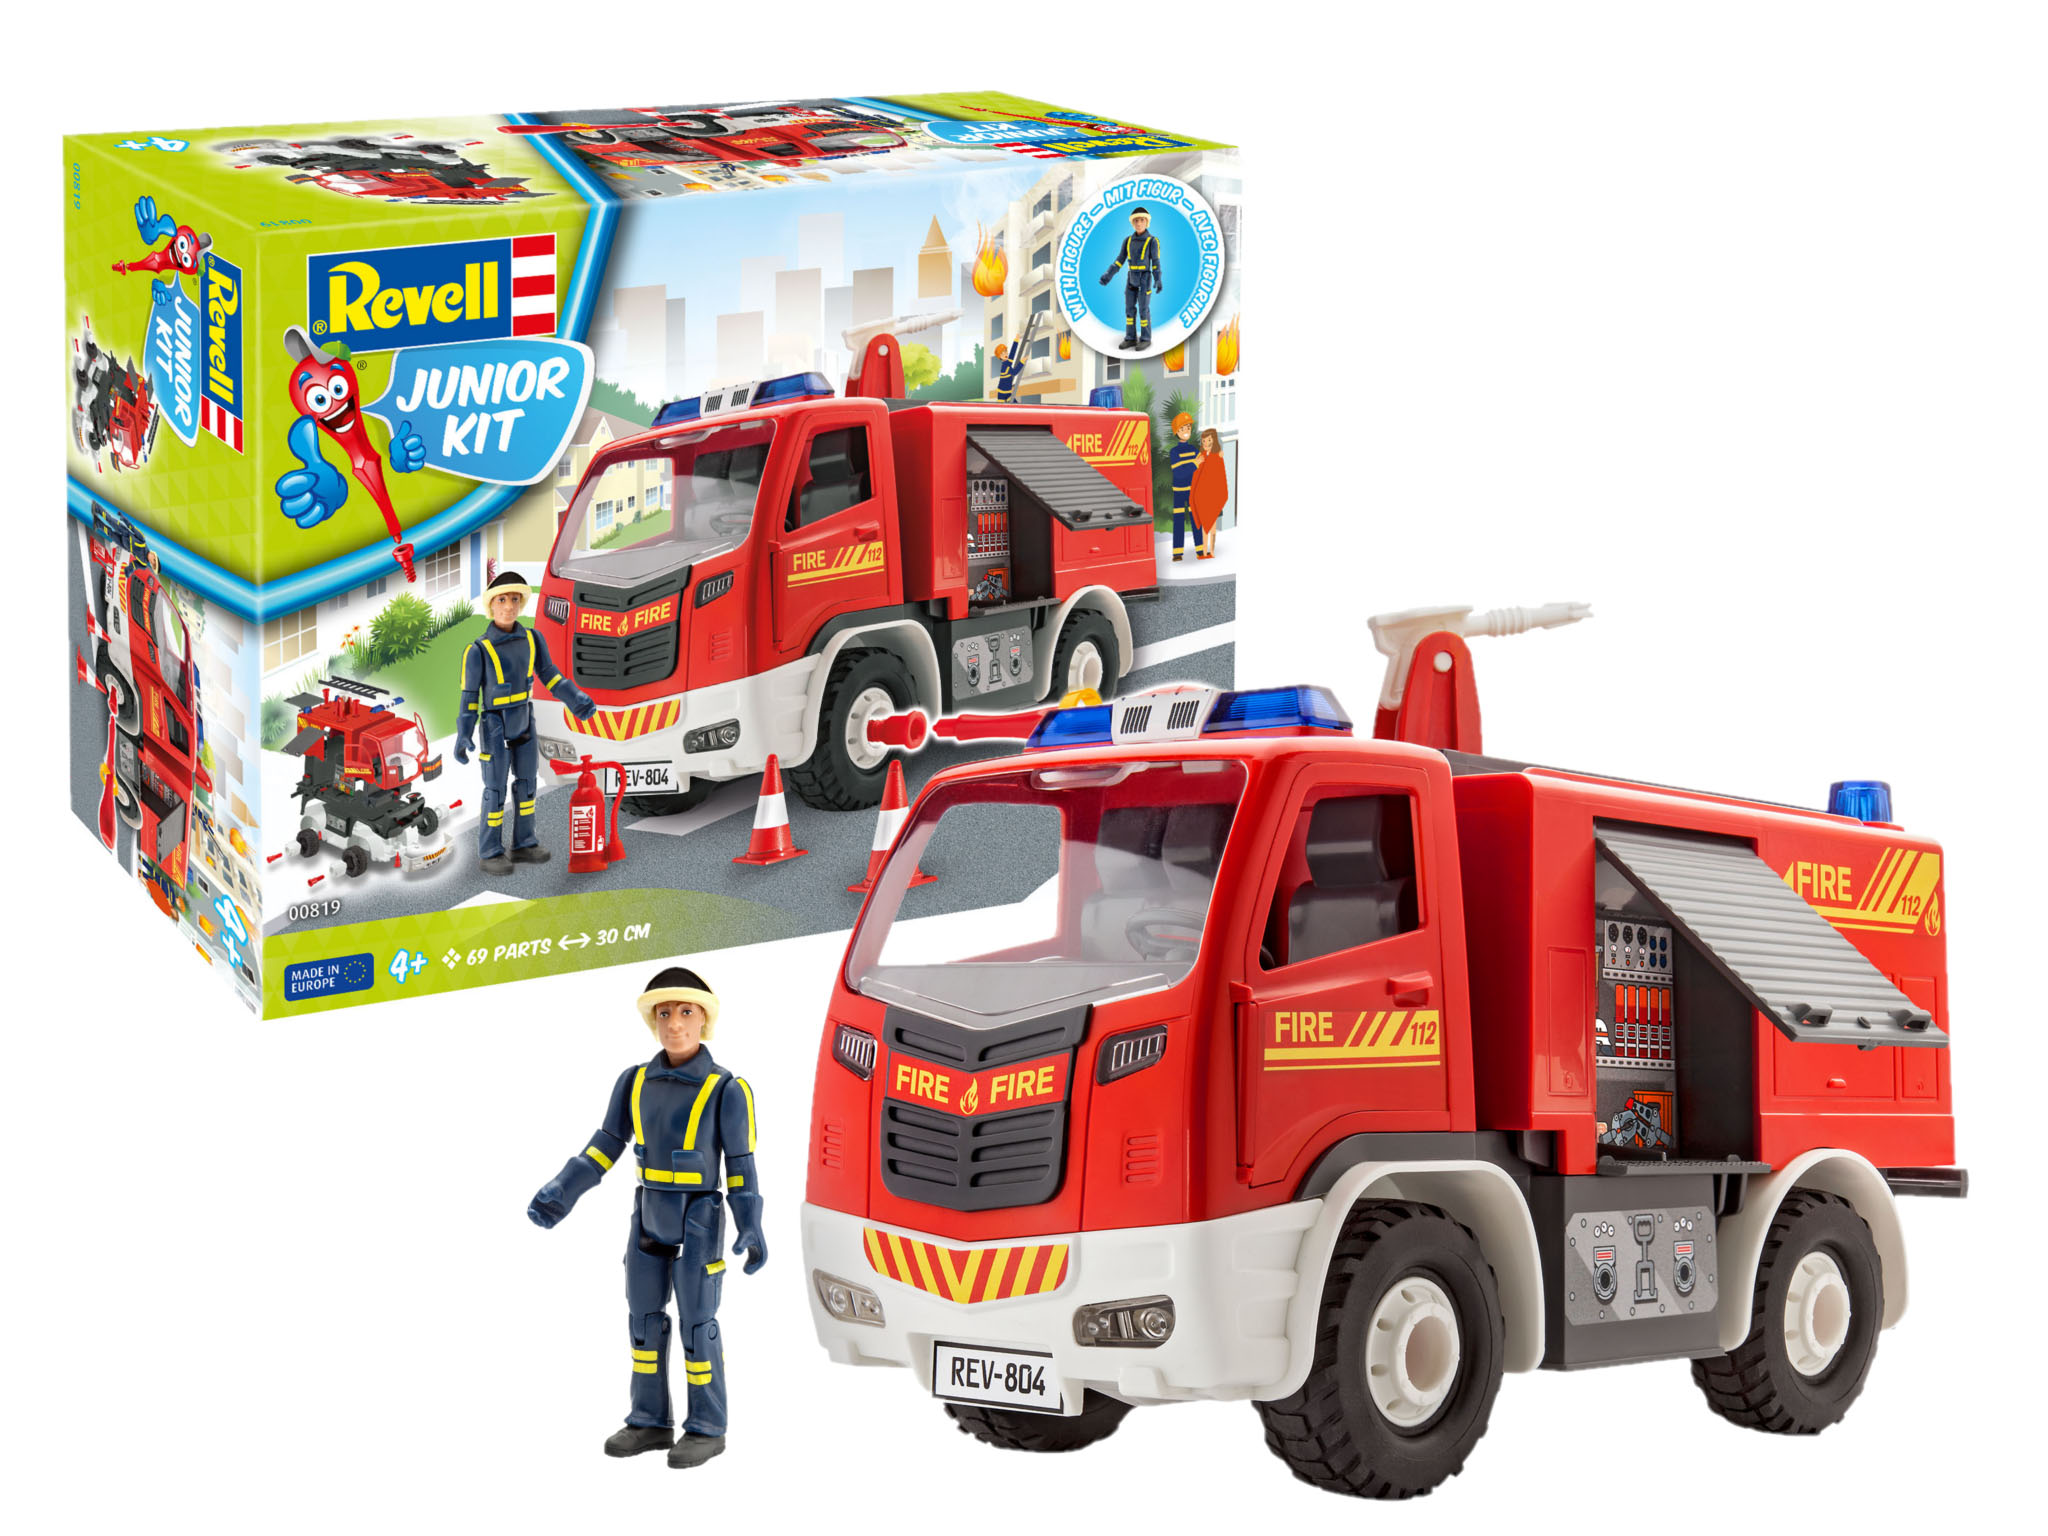 Revell Rmx451004 Fire Truck Junior Kit for sale online 